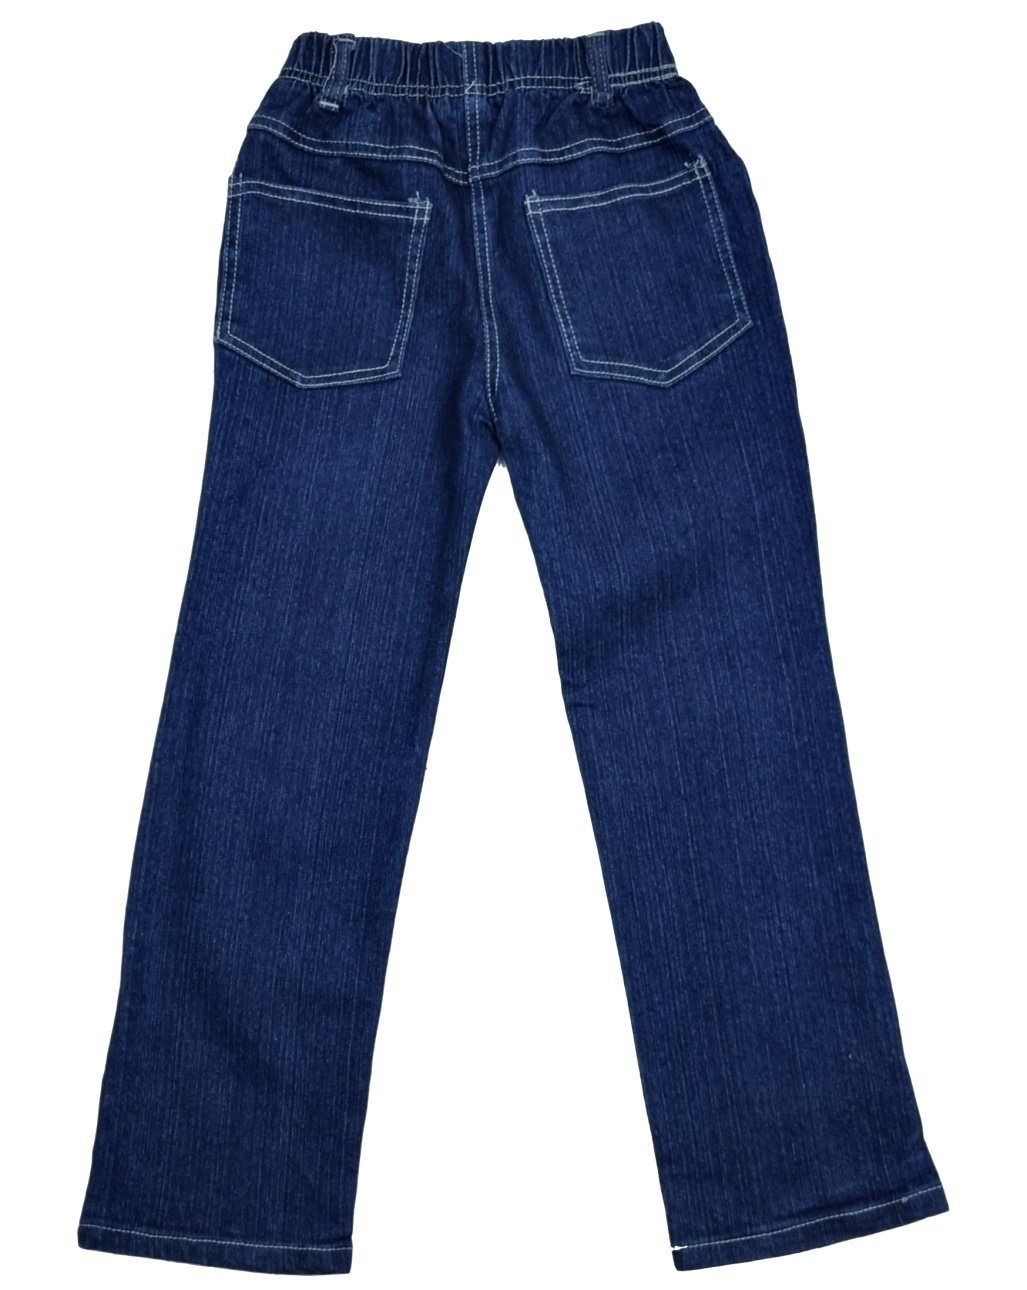 Mädchen M5 Fashion Stretchjeans Stretch-Jeans Girls mit Gummizug, rundum Hose Jeans